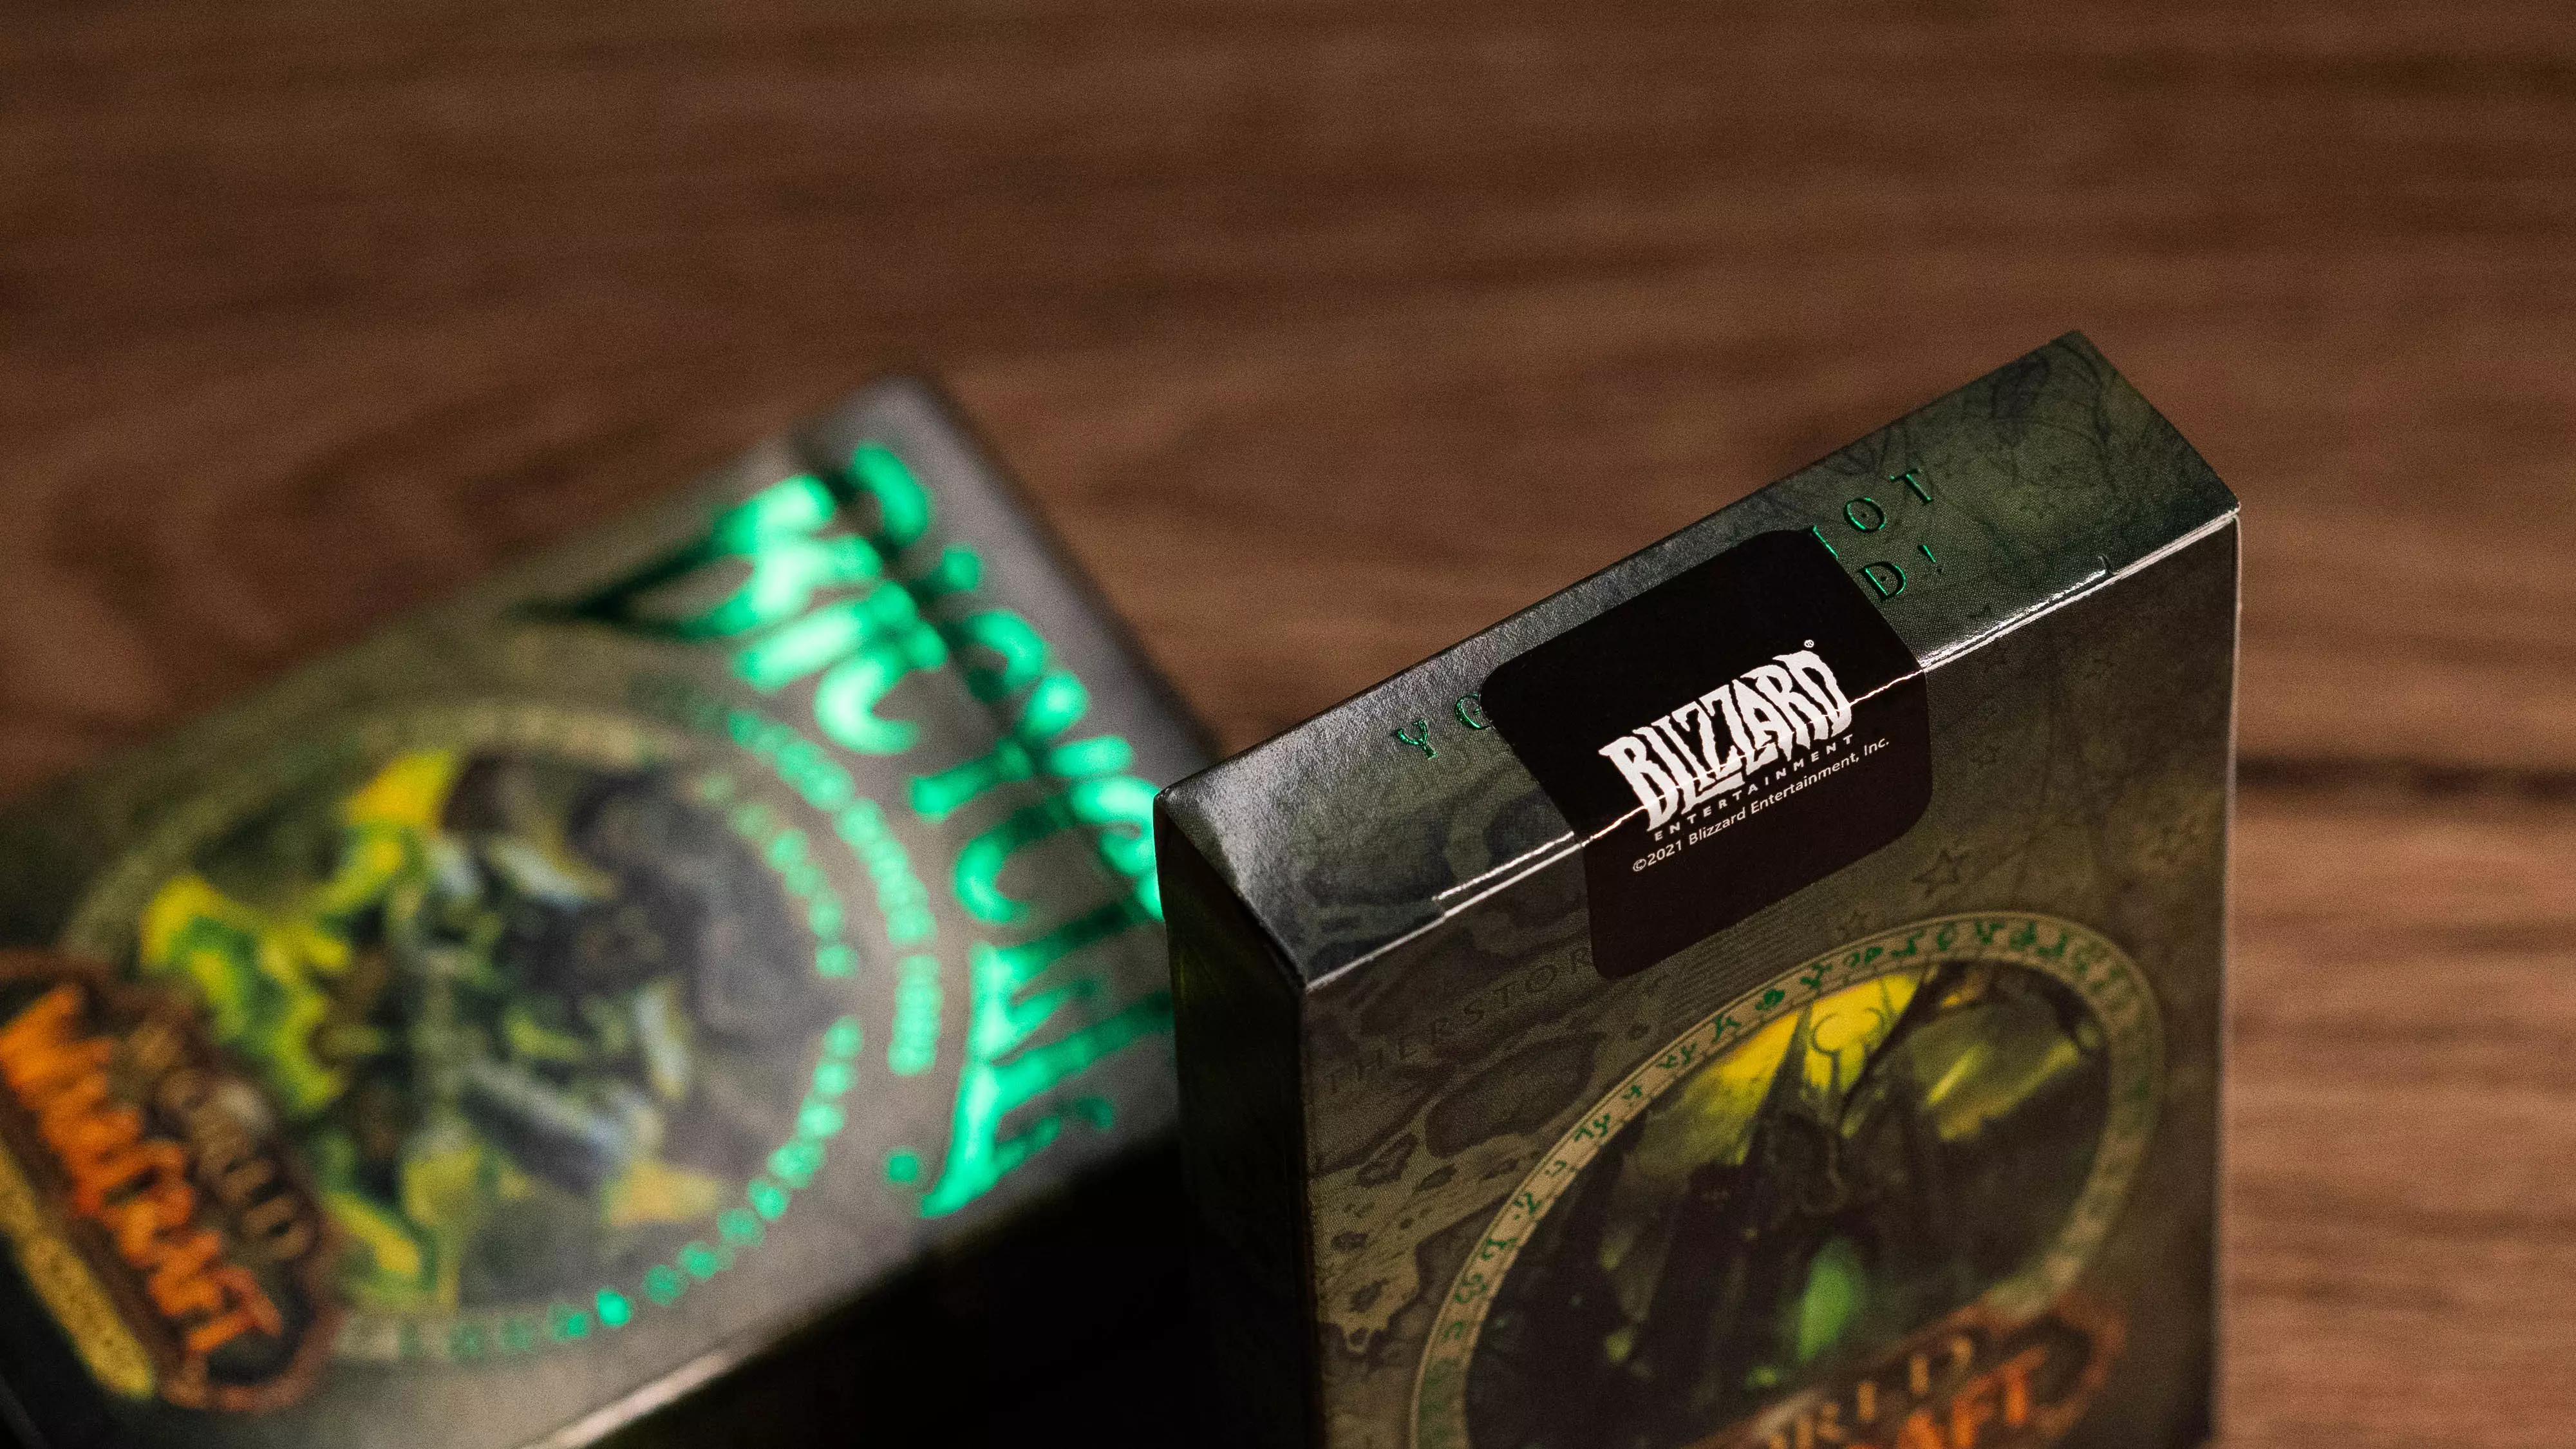 Eine Bicycle Creatives Bicycle World of Warcraft Burning Crusade Kartenschachtel ist im Detail zu sehen, die Schachtel wird durch einen offiziellen Blizzard Sticker verschlossen.